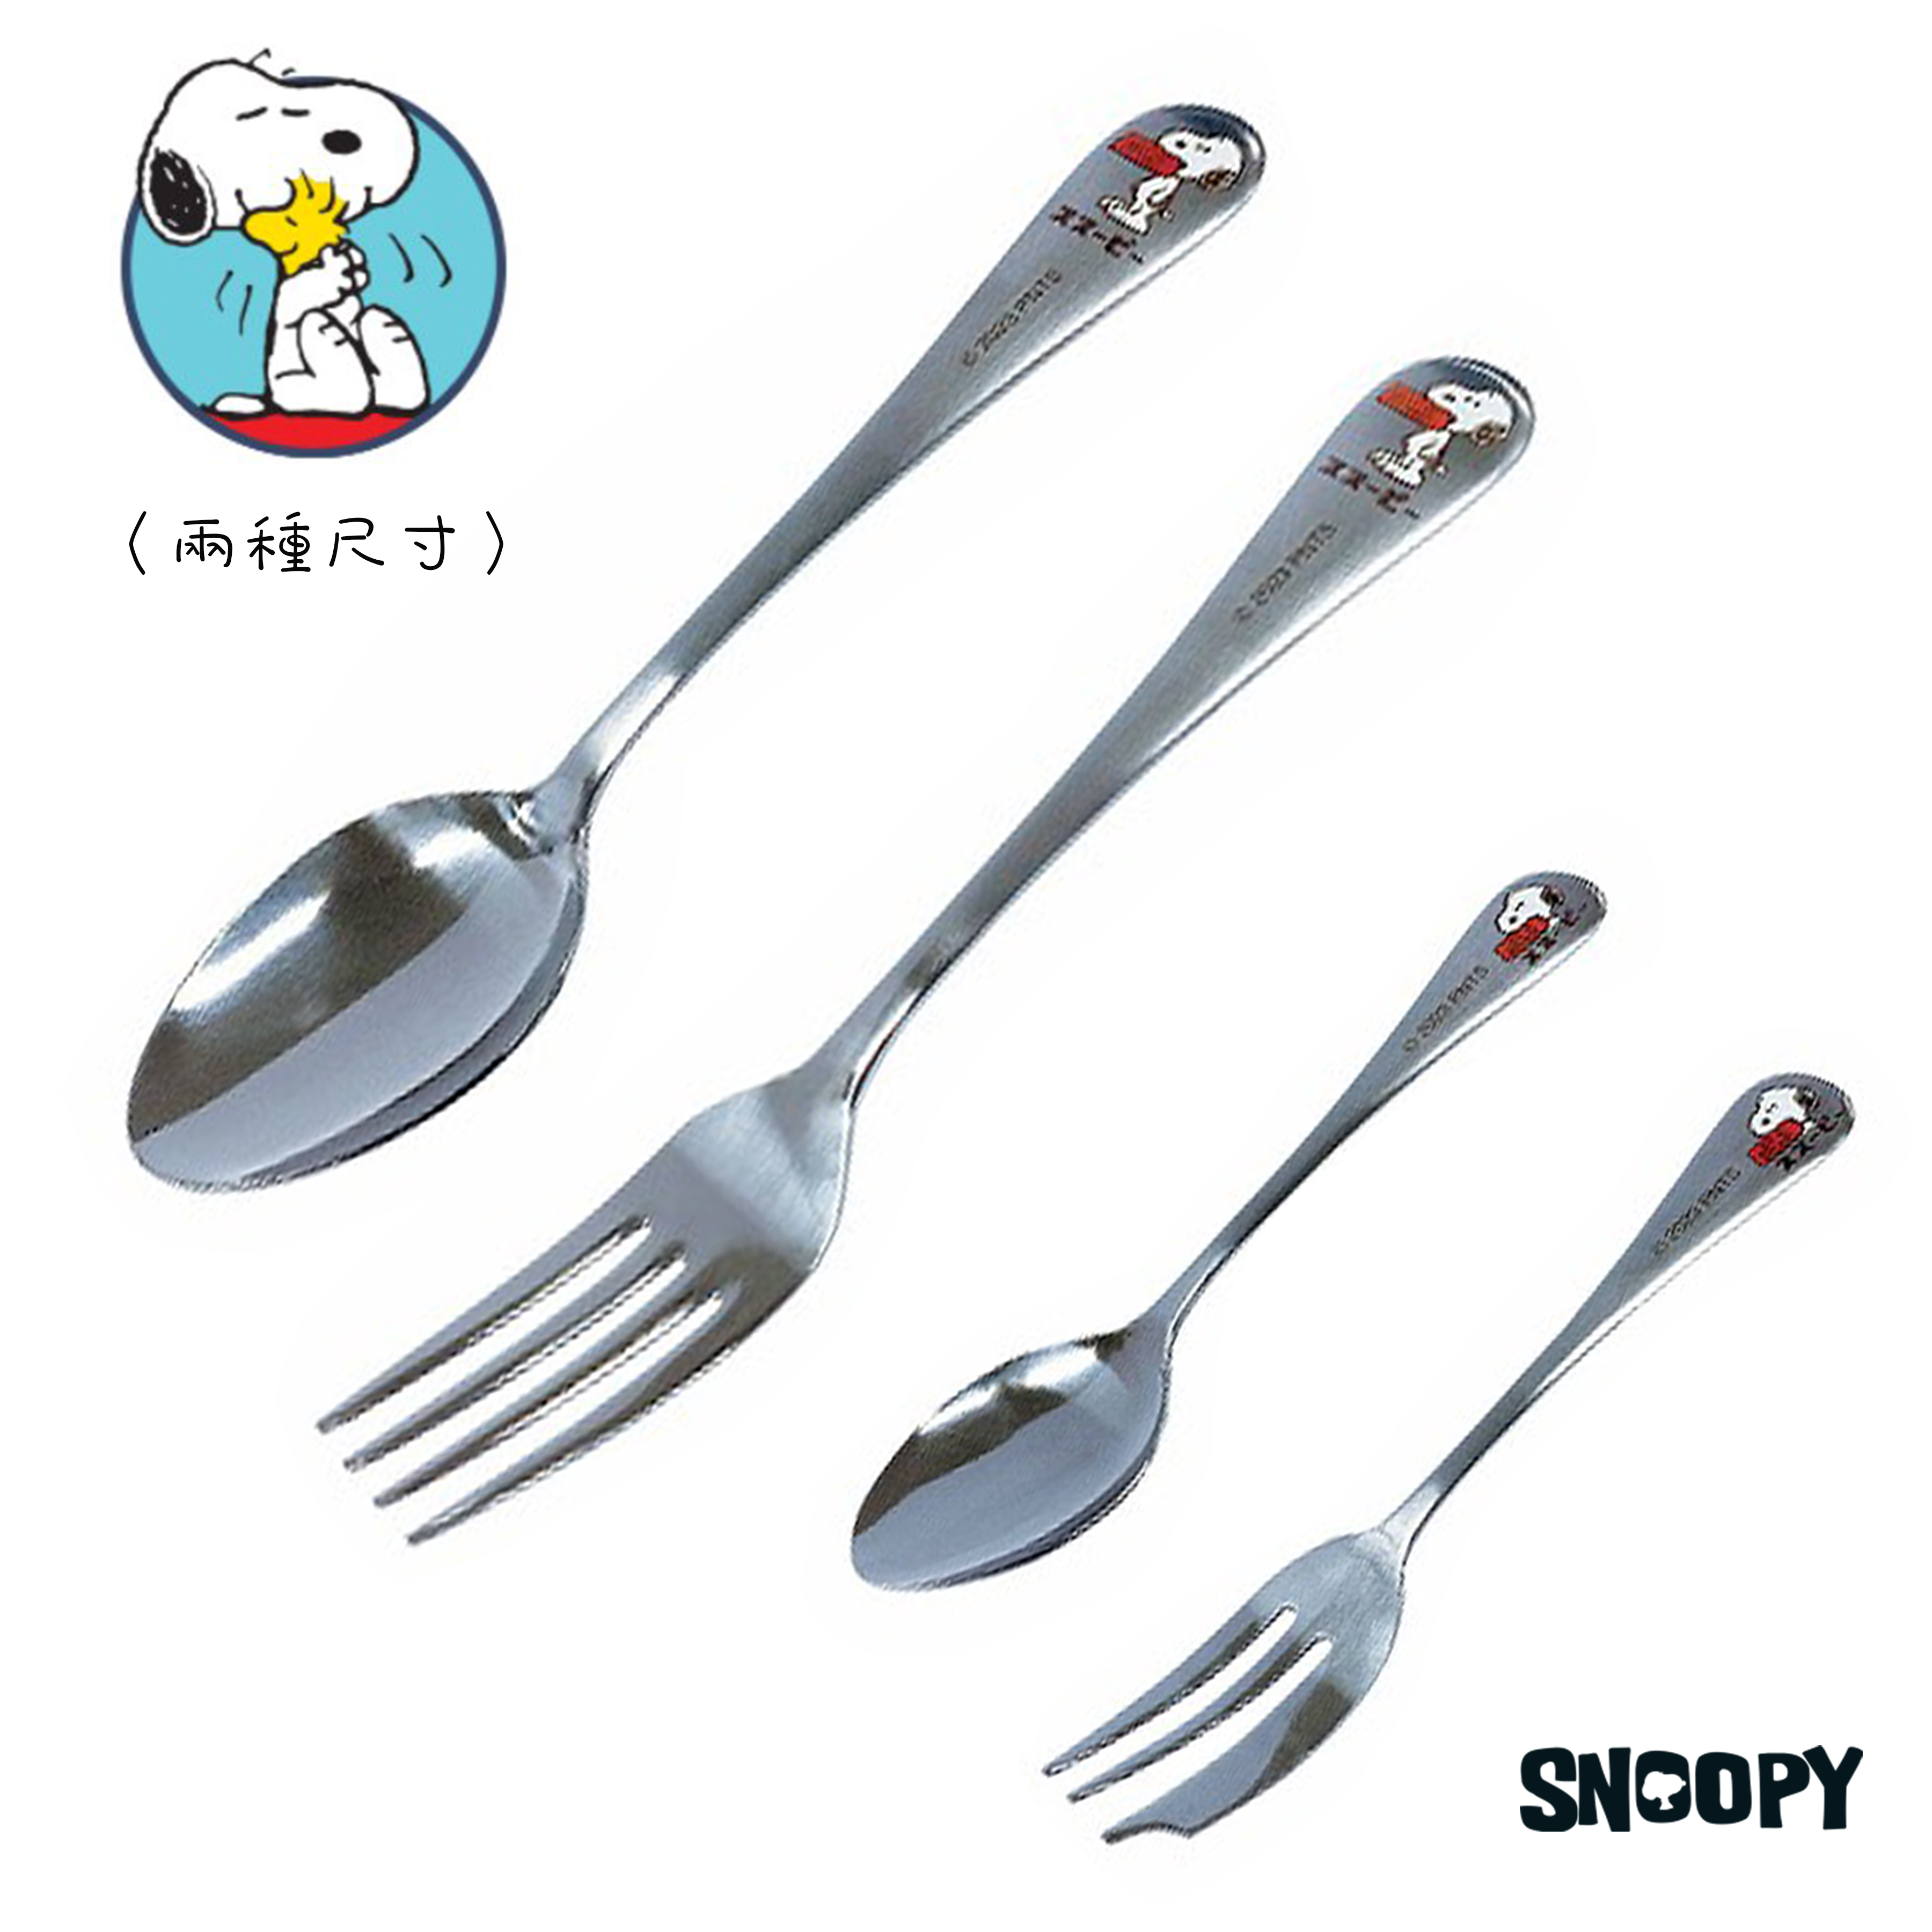 餐具-史努比 SNOOPY PEANUTS 日本進口正版授權